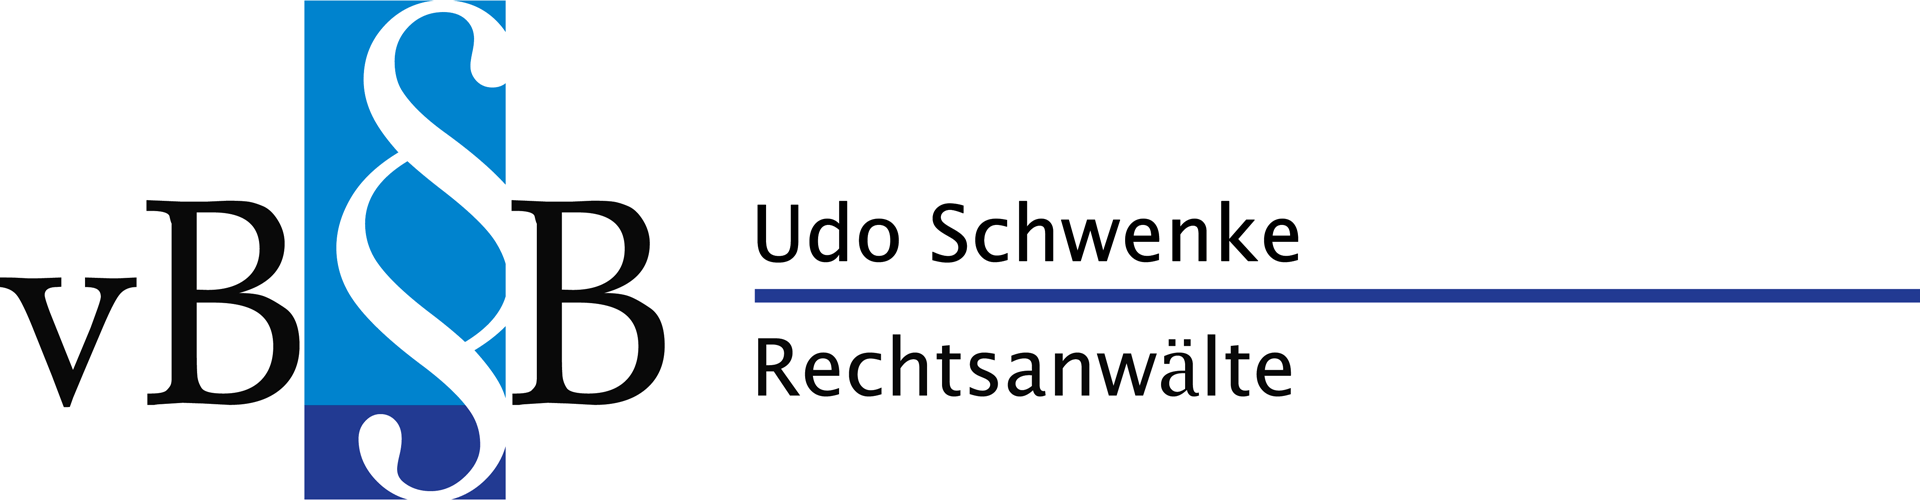 Logo vbb Rechtsanwalt Udo Schwenke